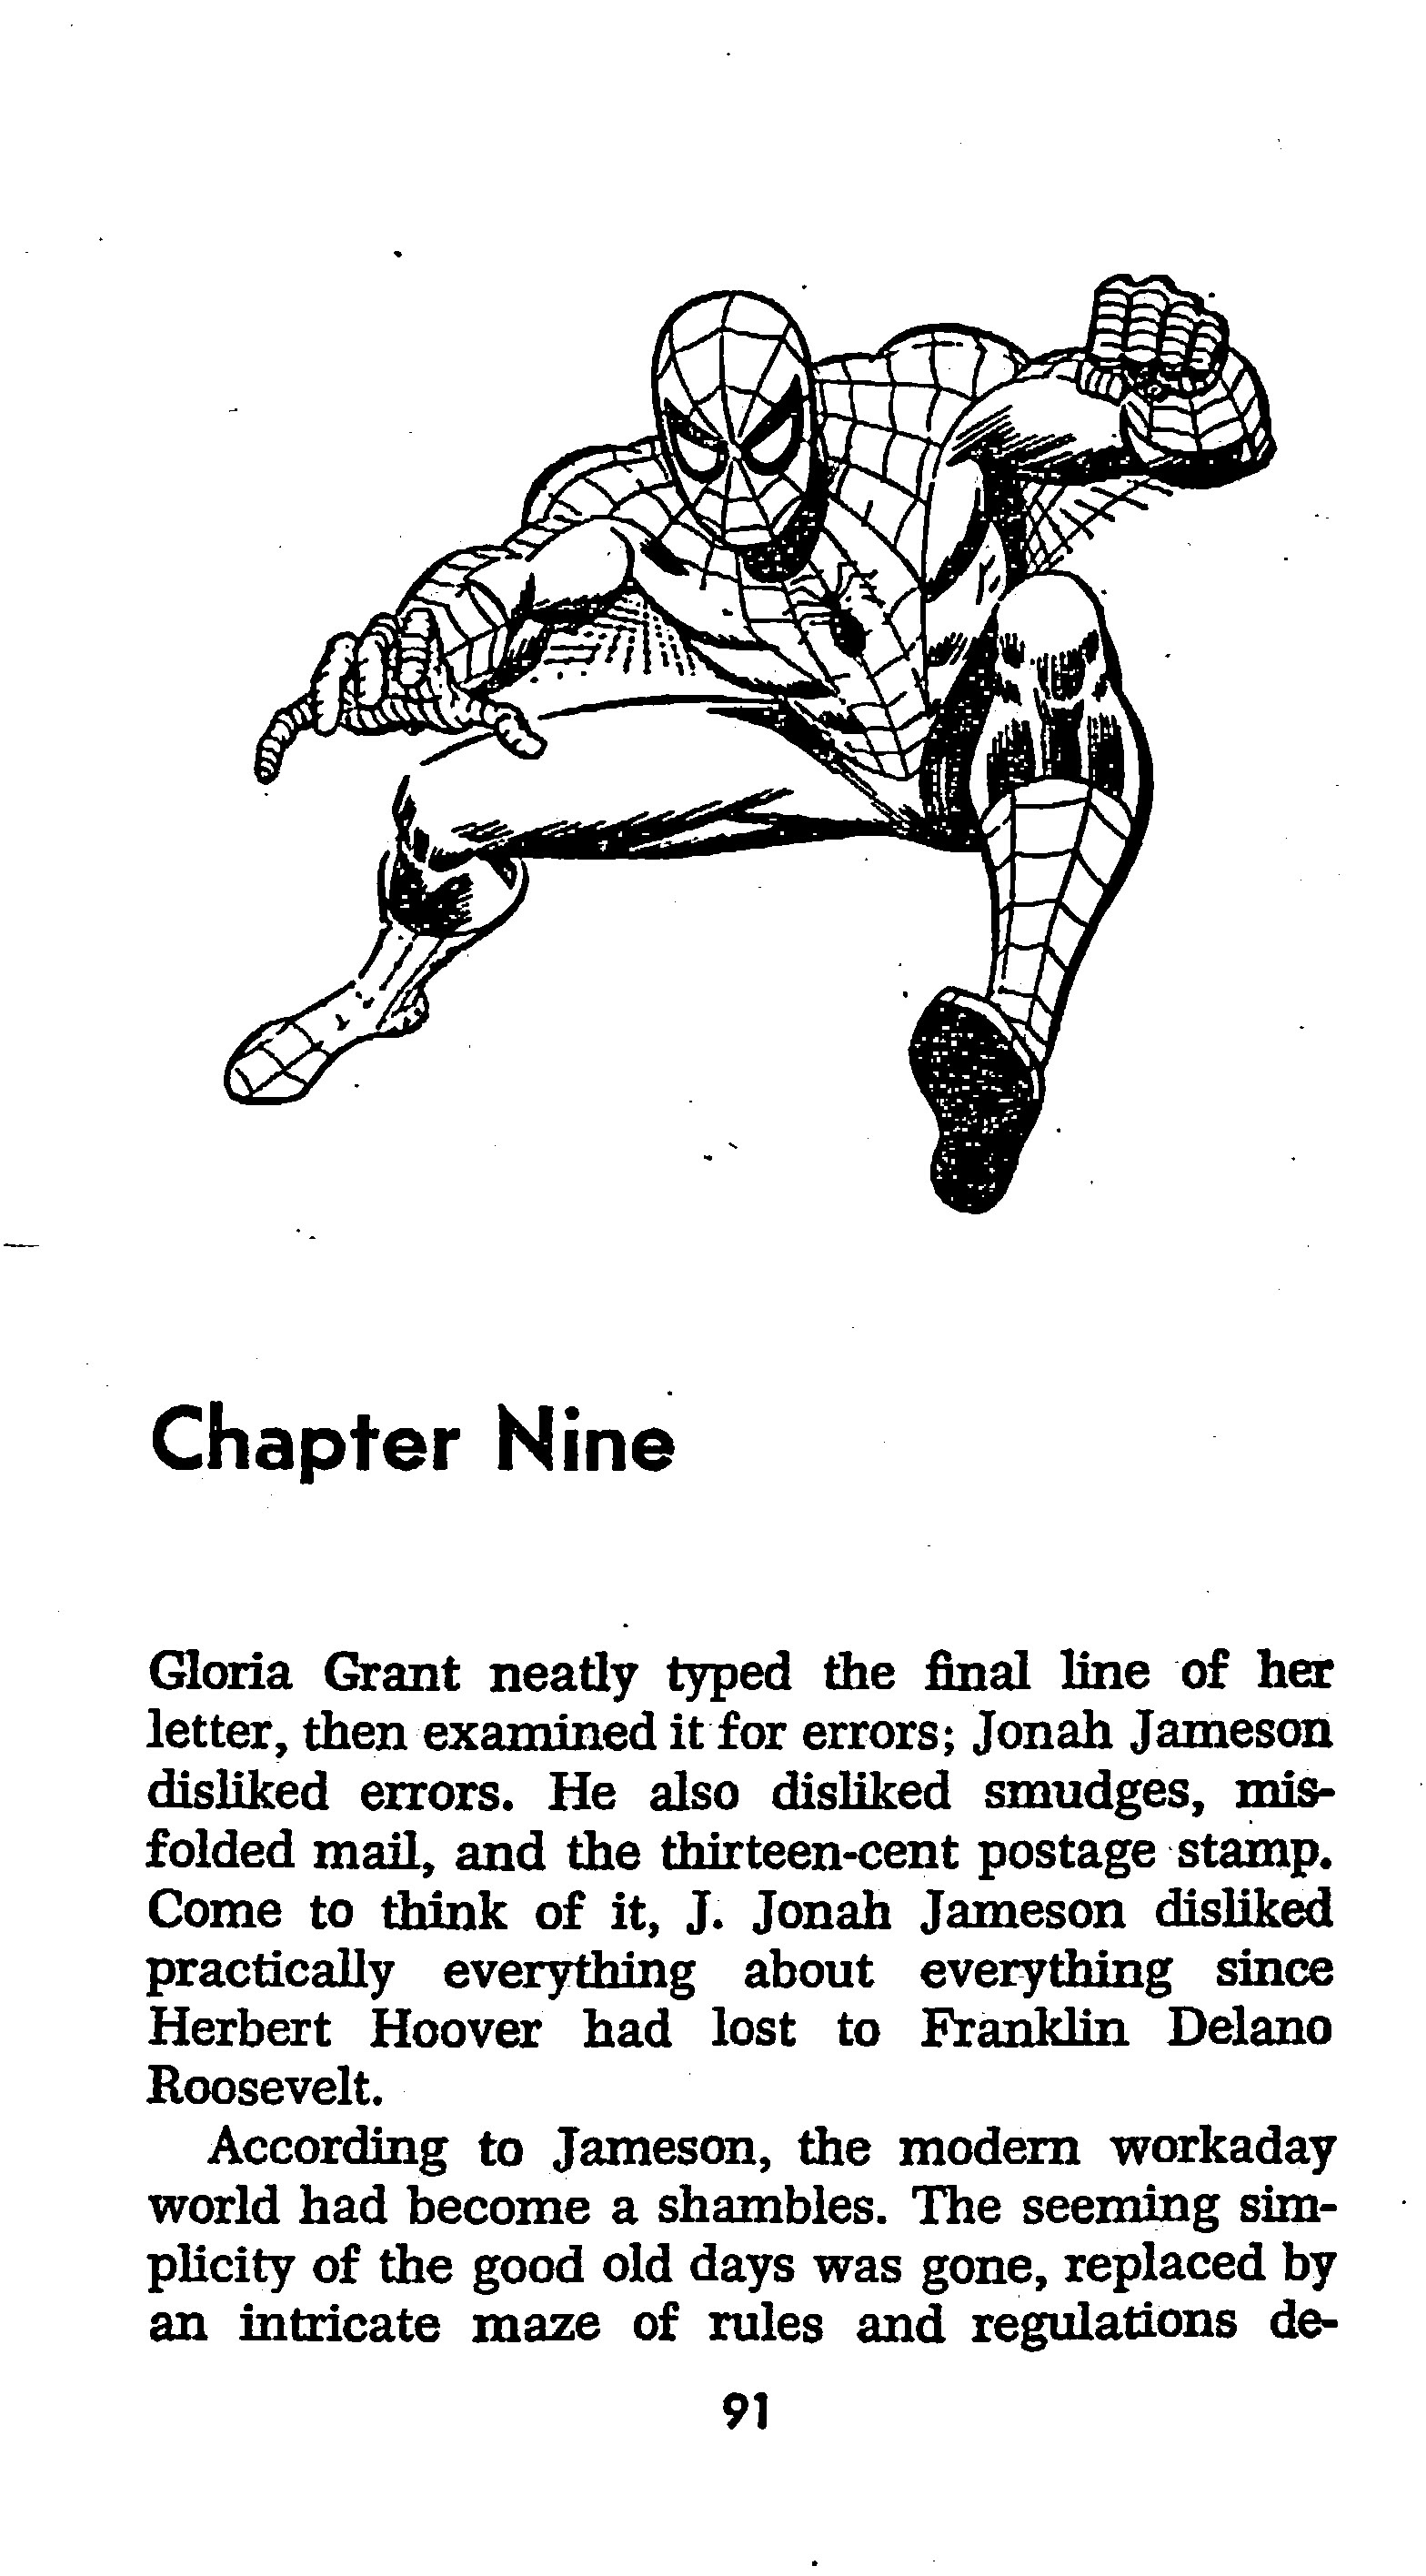 Read online The Amazing Spider-Man: Mayhem in Manhattan comic -  Issue # TPB (Part 1) - 92